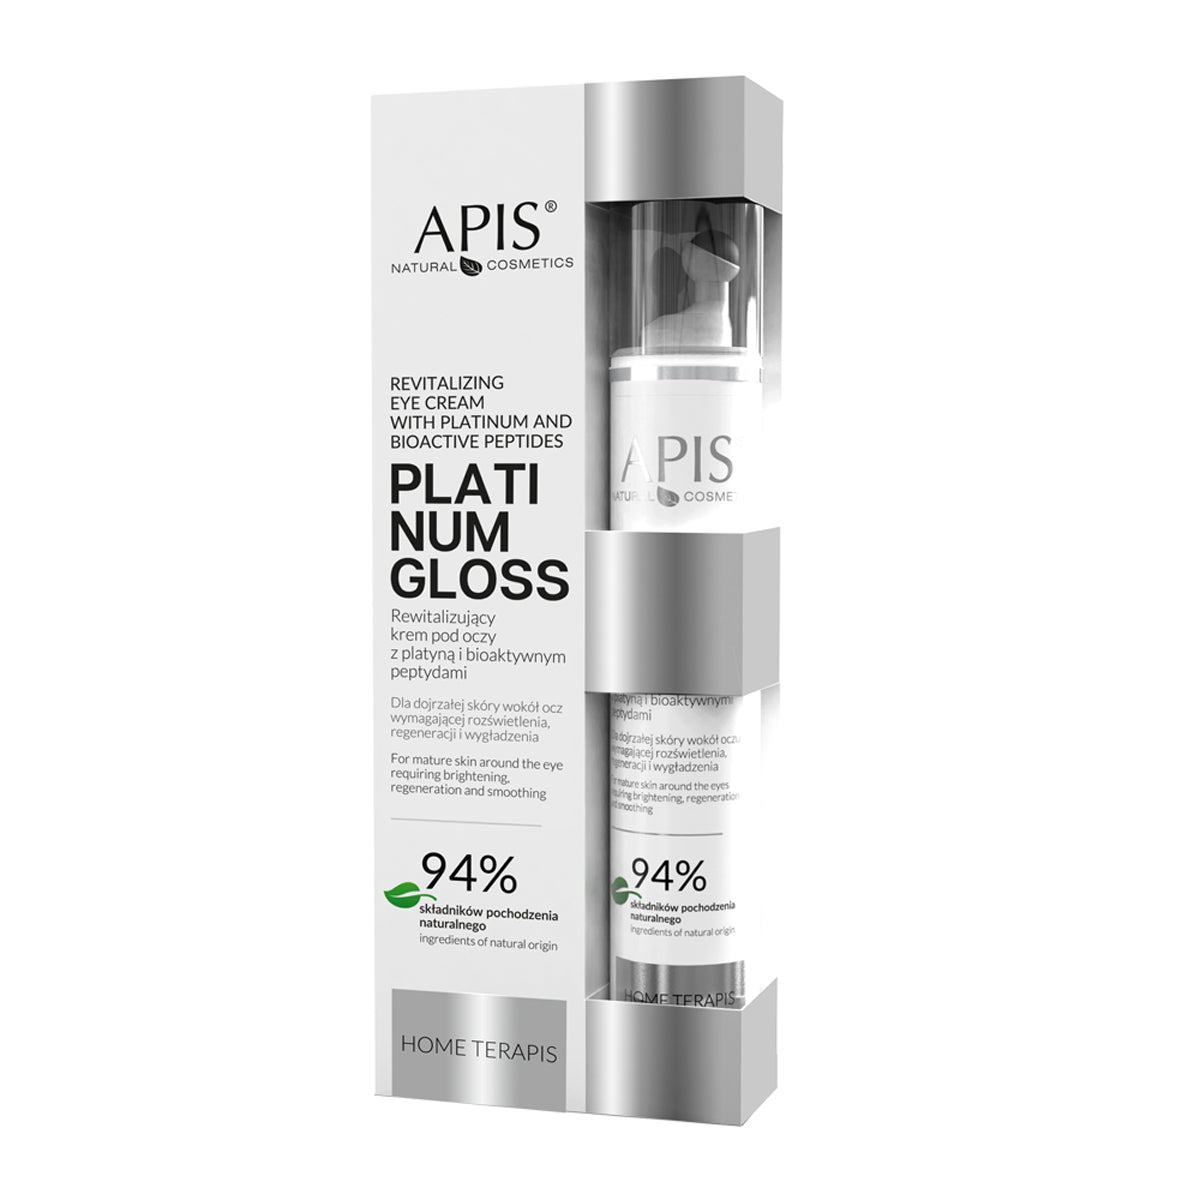 Crème revitalisante pour les yeux Apis home terapis platinum gloss avec platine et peptides bioactifs 10 ml